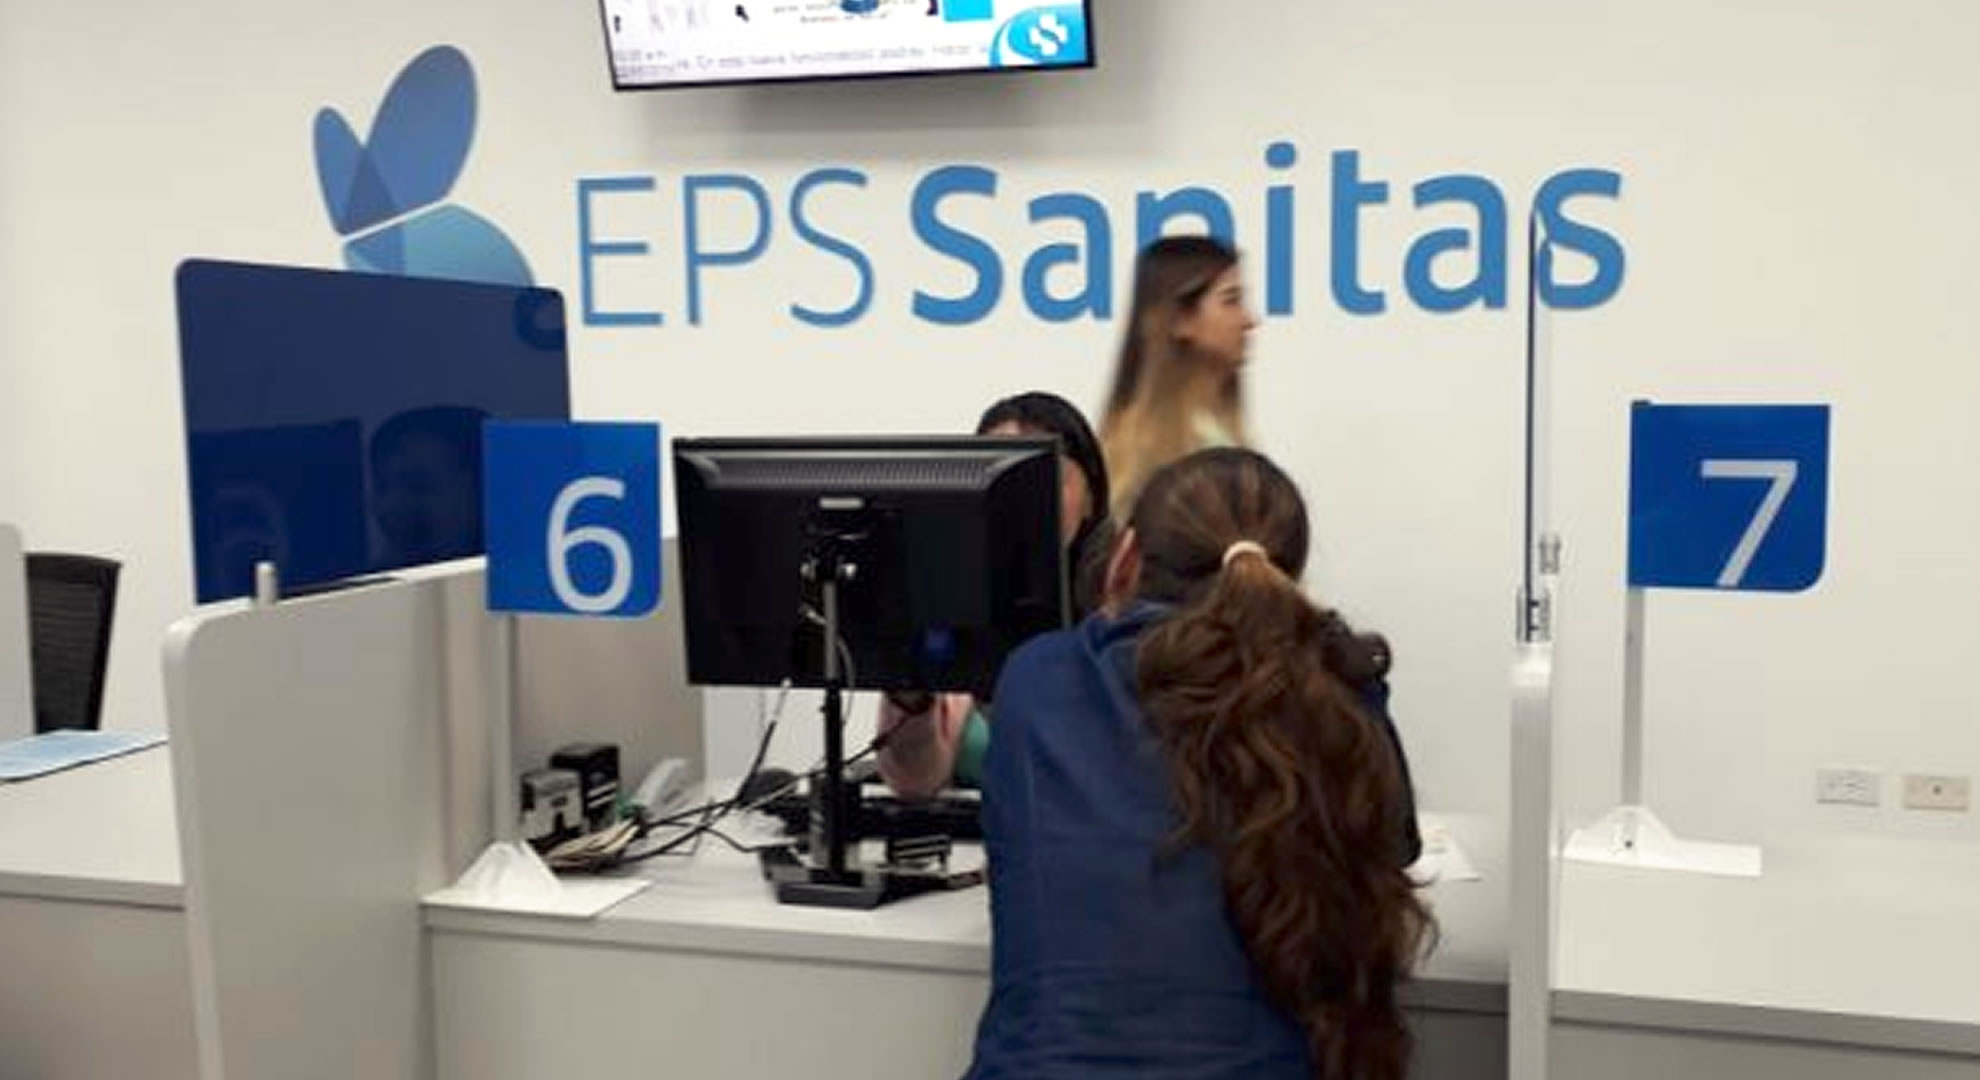 Autores del ciberataque a la EPS Sanitas dieron información privada de la empresa